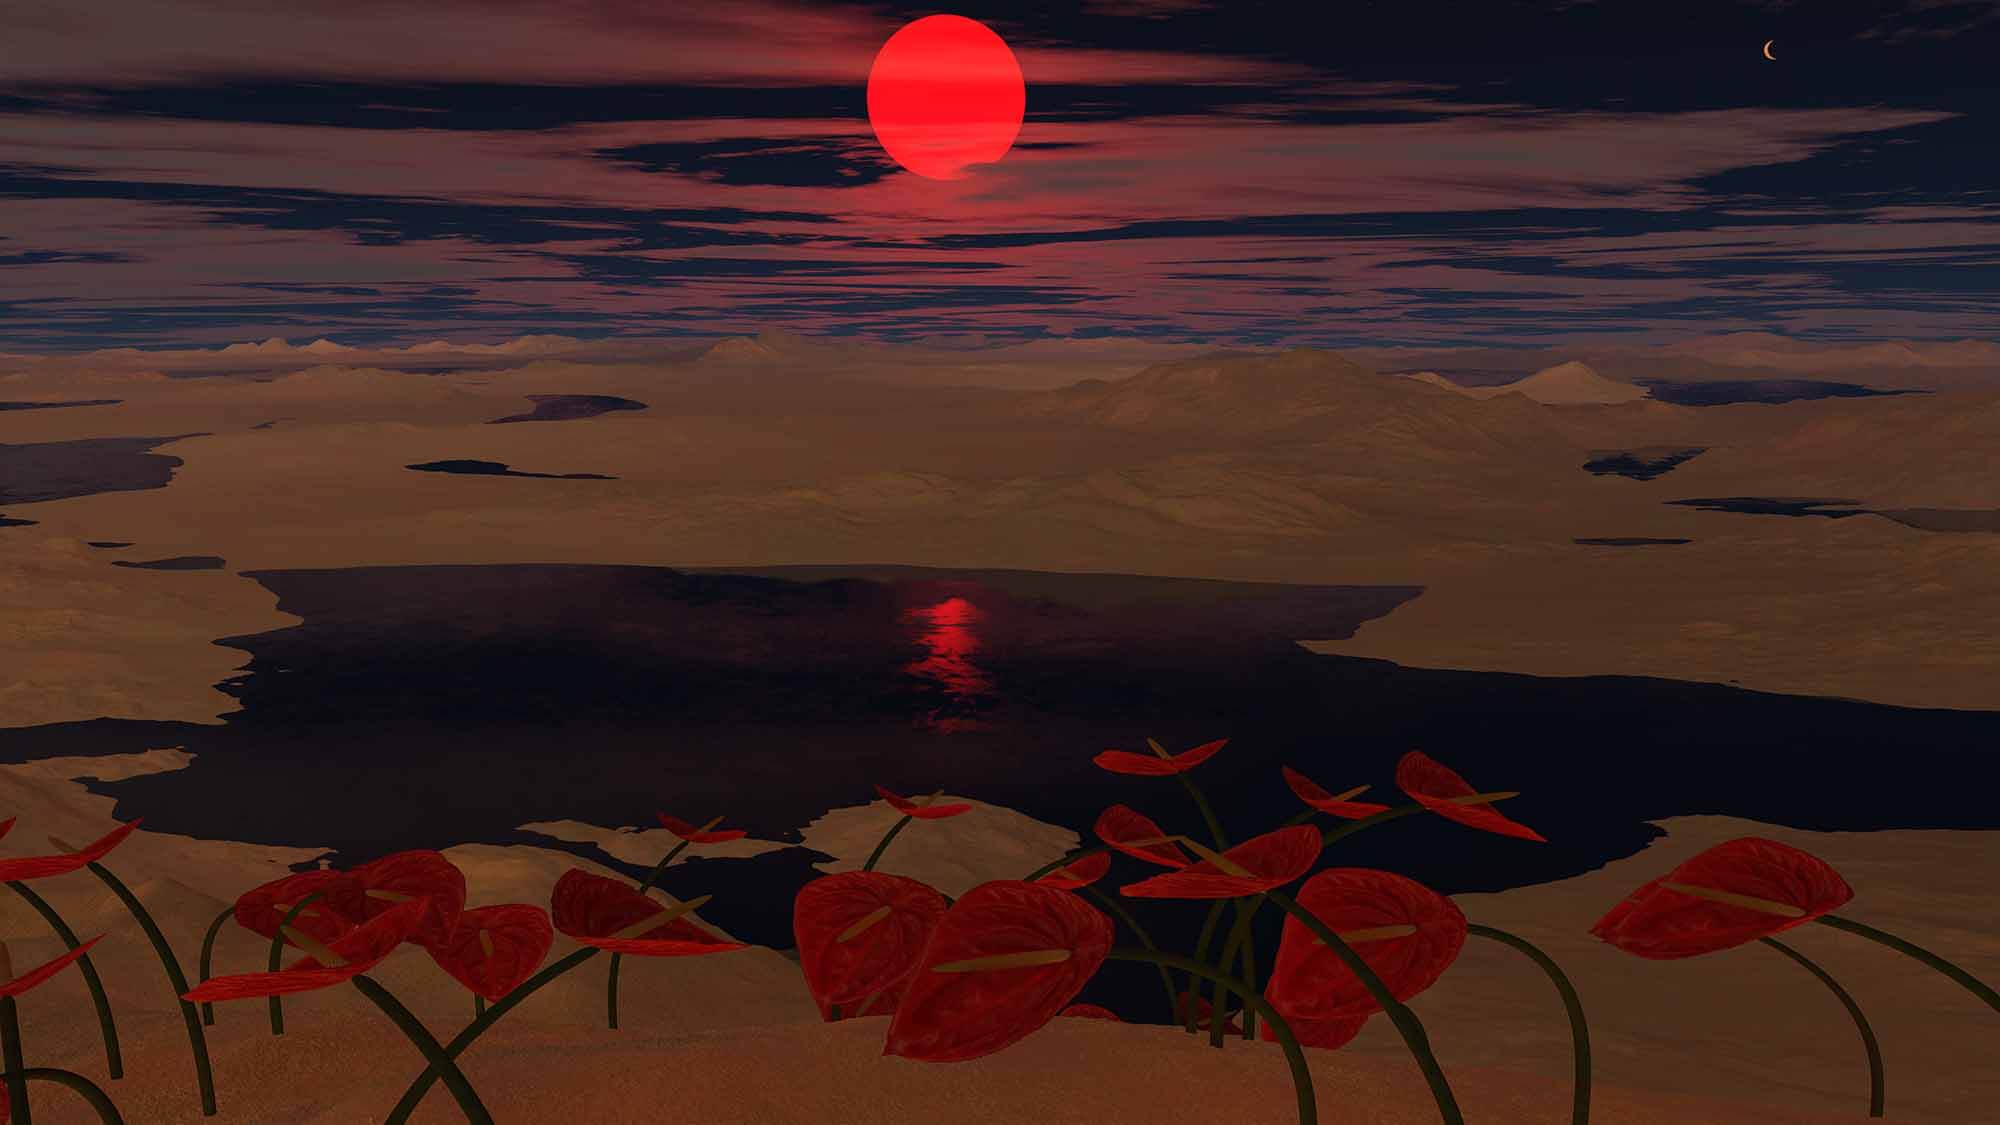 כוכב לכת מצולק בפעילות טקטונית ערב הפיכת השמש שלו לענק אדום. איור: אוניברסיטת וושינגטון